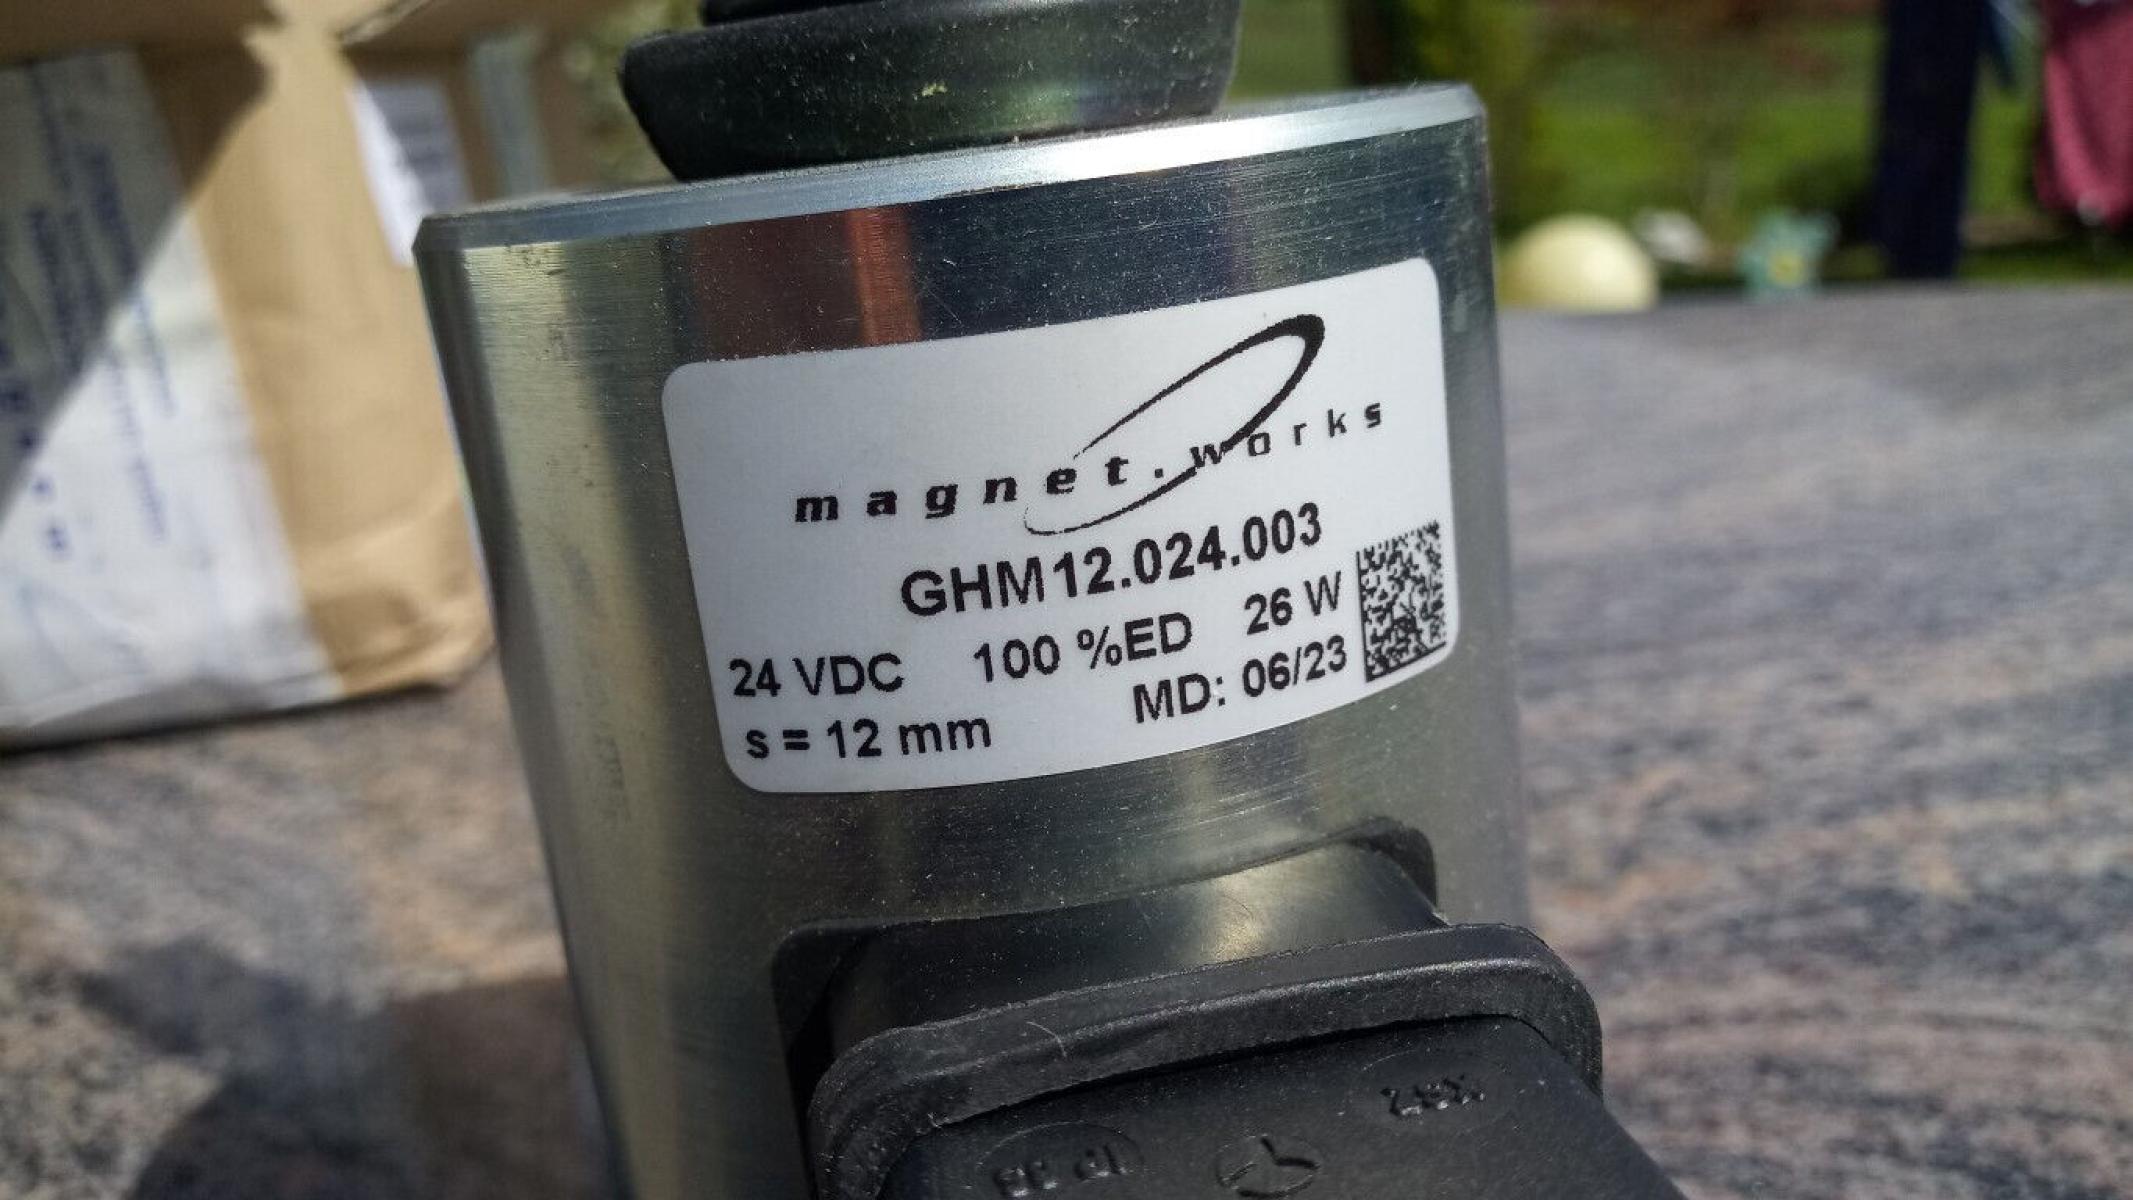 GS Einfachhubmagnet mit Rückstellfeder und Gabel GHM 12.024.003 24VDC 100%ED 26W, € 59,- (8130 Frohnleiten)